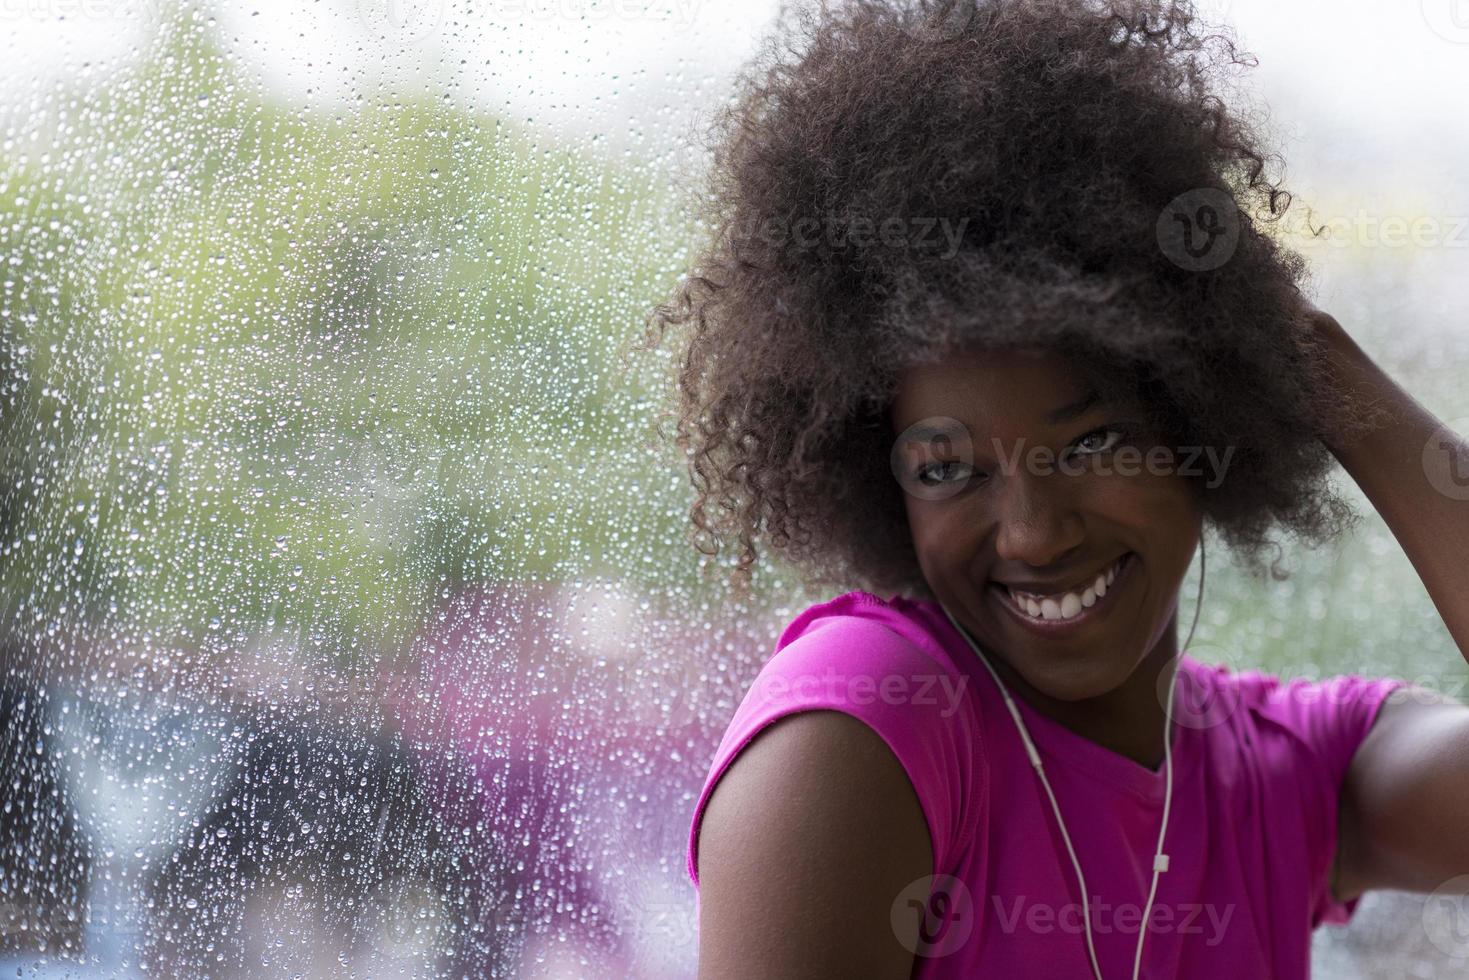 portrait de jeune femme afro-américaine dans la salle de gym tout en écoutant de la musique photo